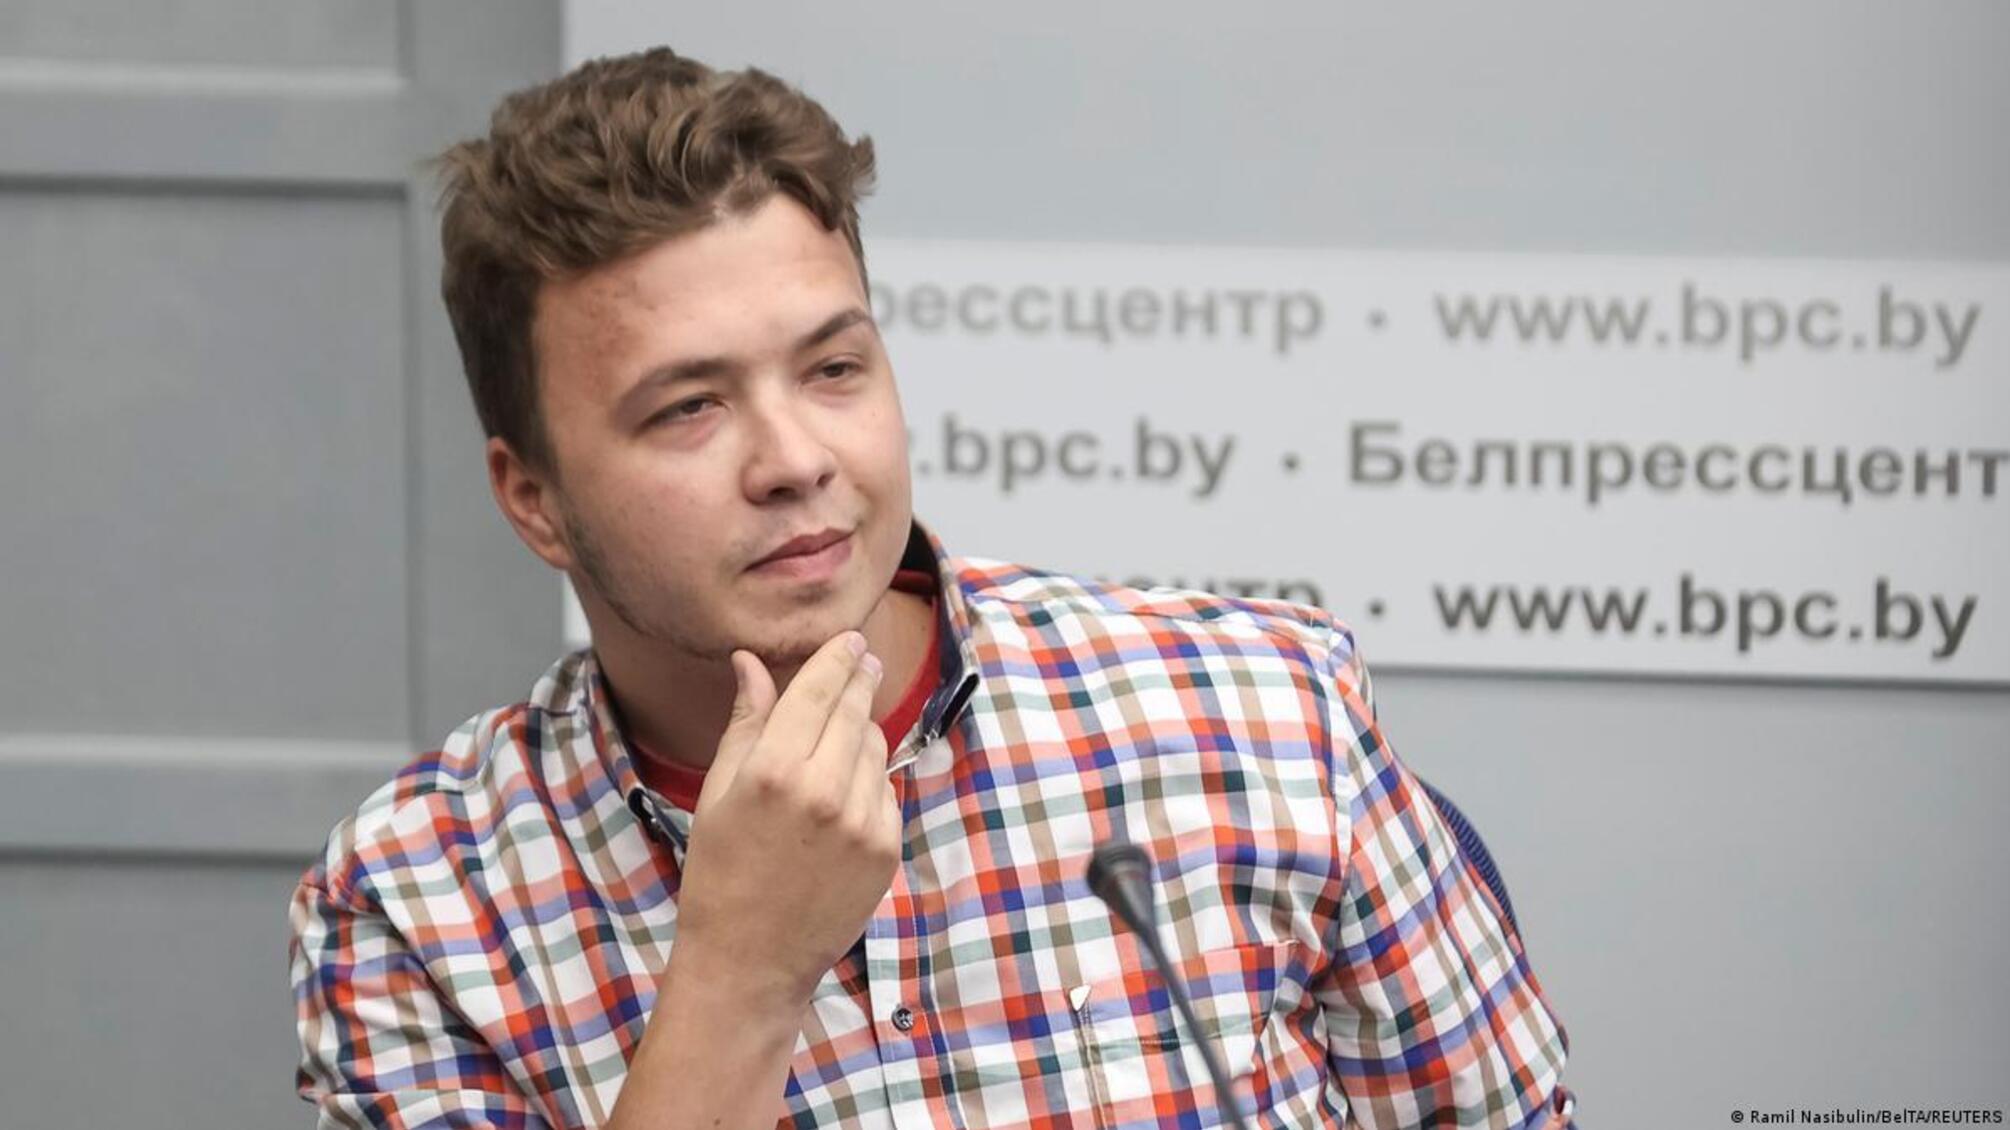 Несподівано помилували: у Білорусі звільнили журналіста Протасевича